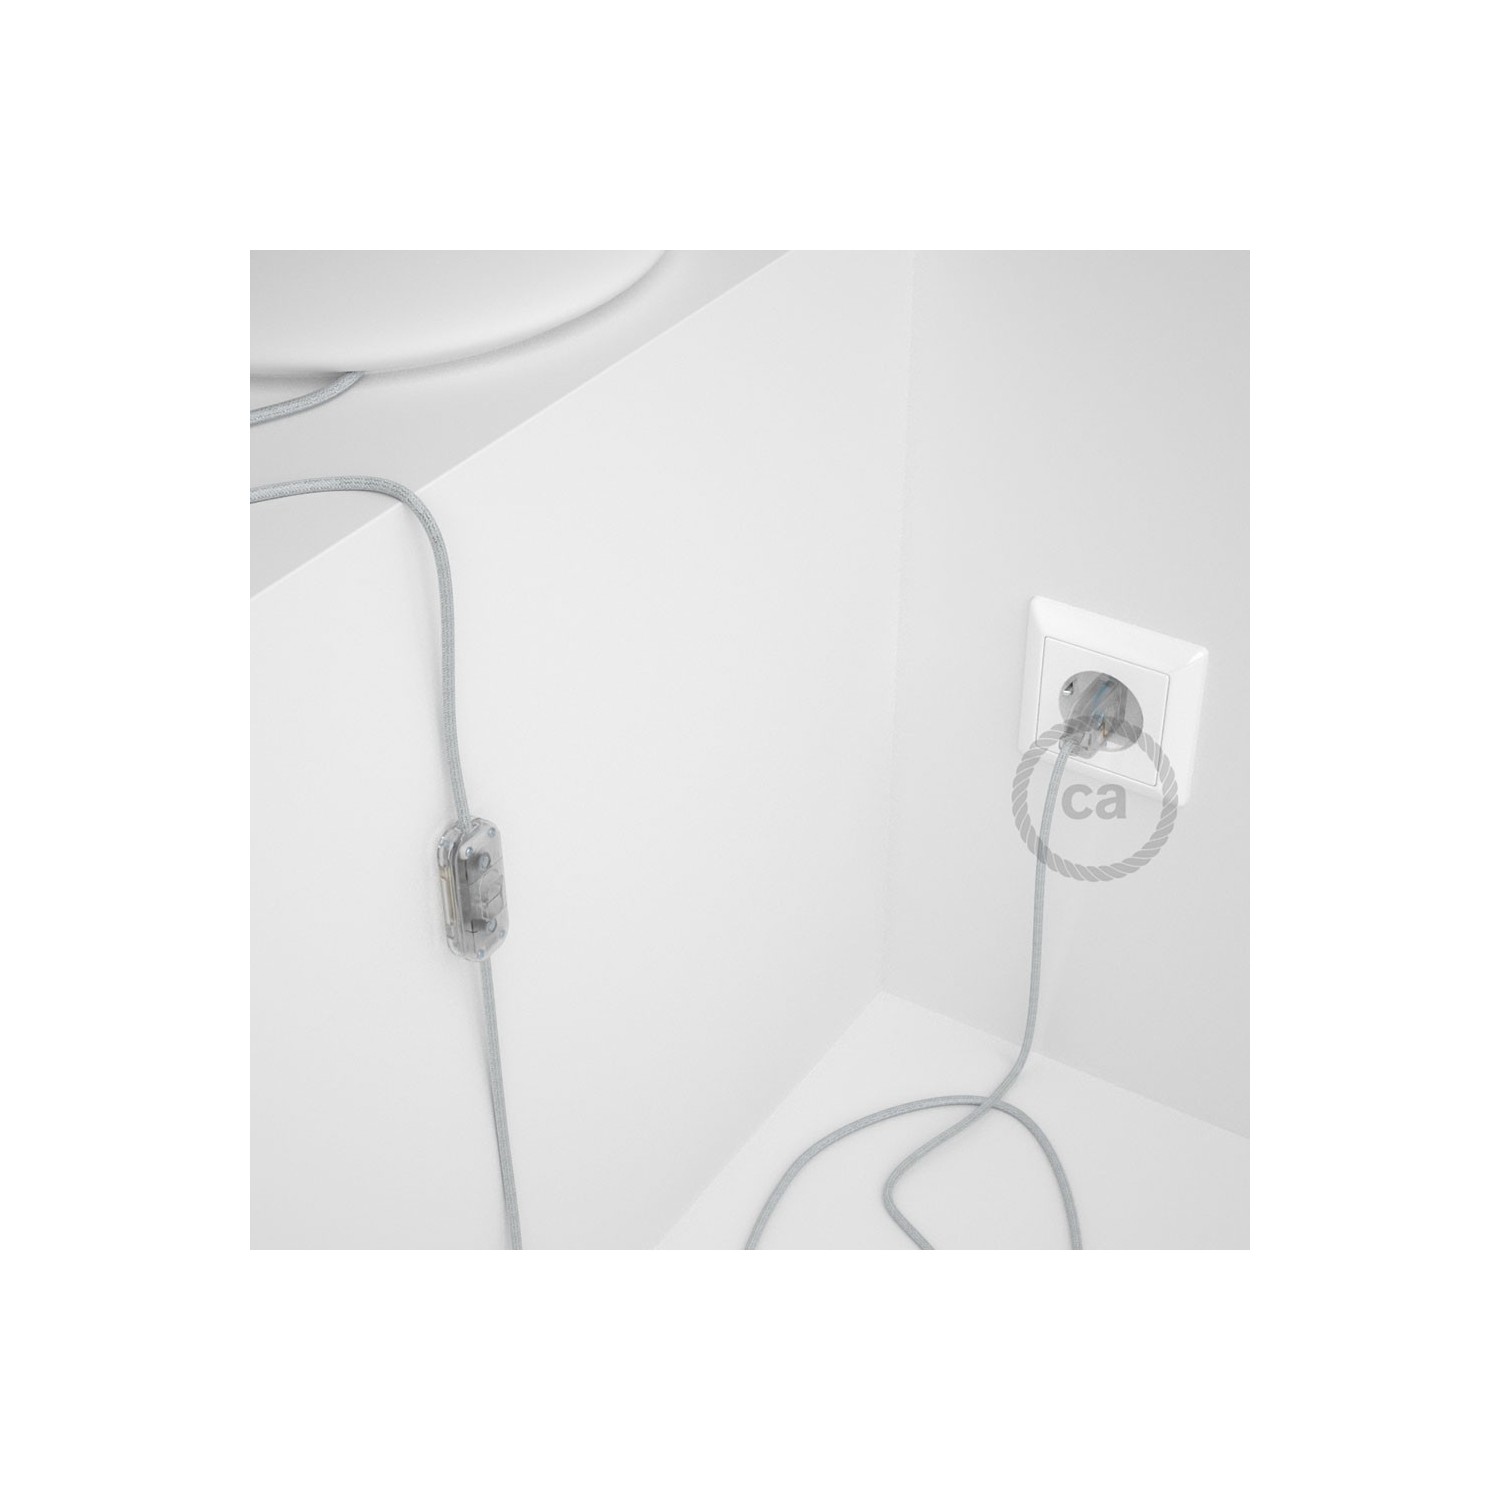 Cablaggio per lampada, cavo RL01 Effetto Seta Glitterato Bianco 1,80 m. Scegli il colore dell'interruttore e della spina.